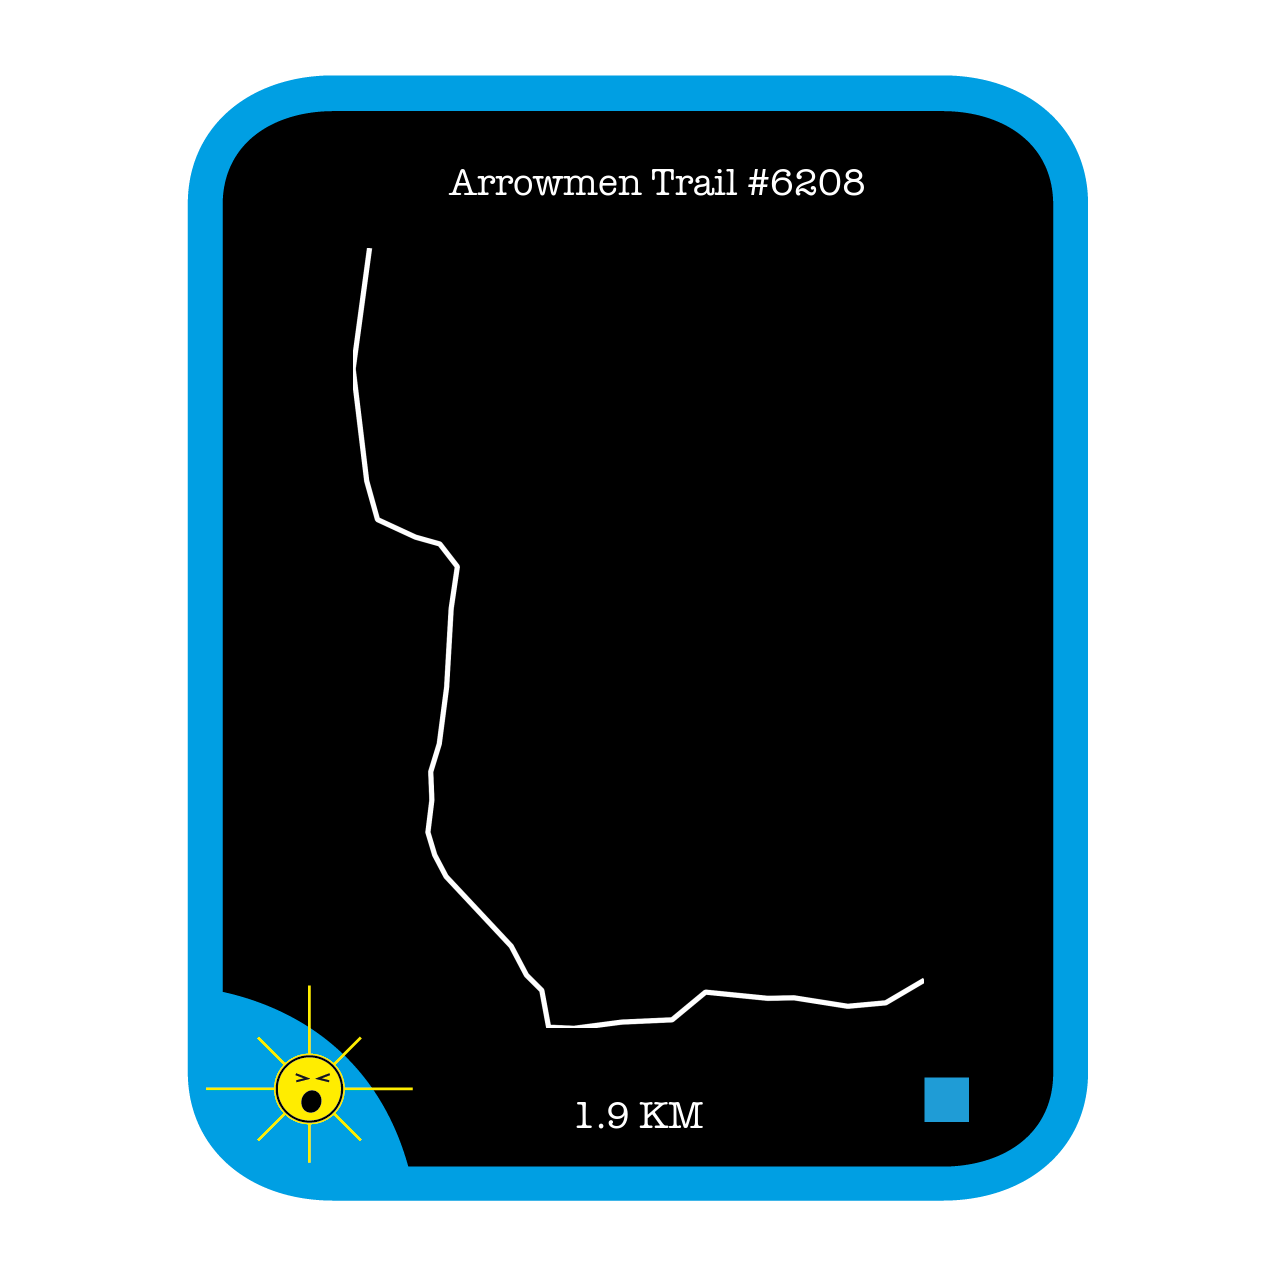 Arrowmen Trail #6208